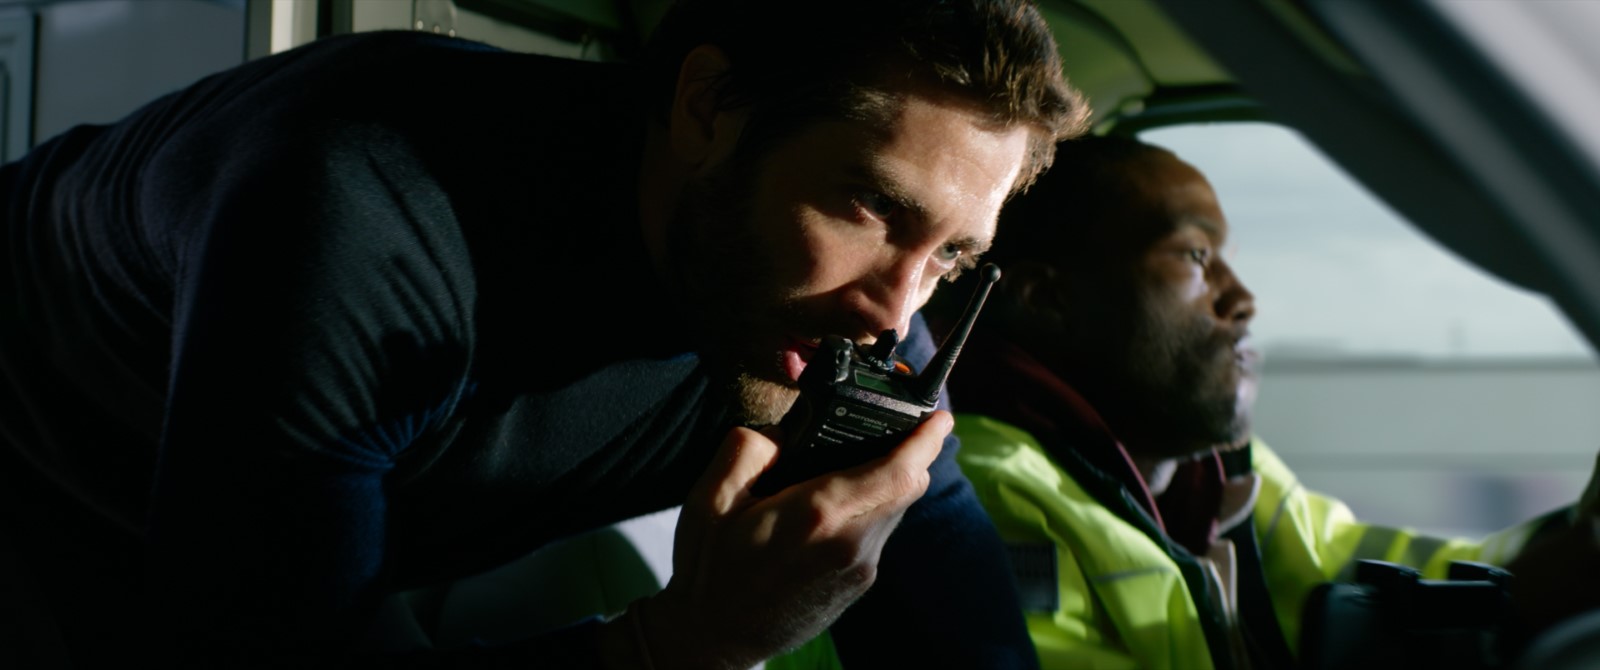 Szenenbild 7 vom Film Ambulance